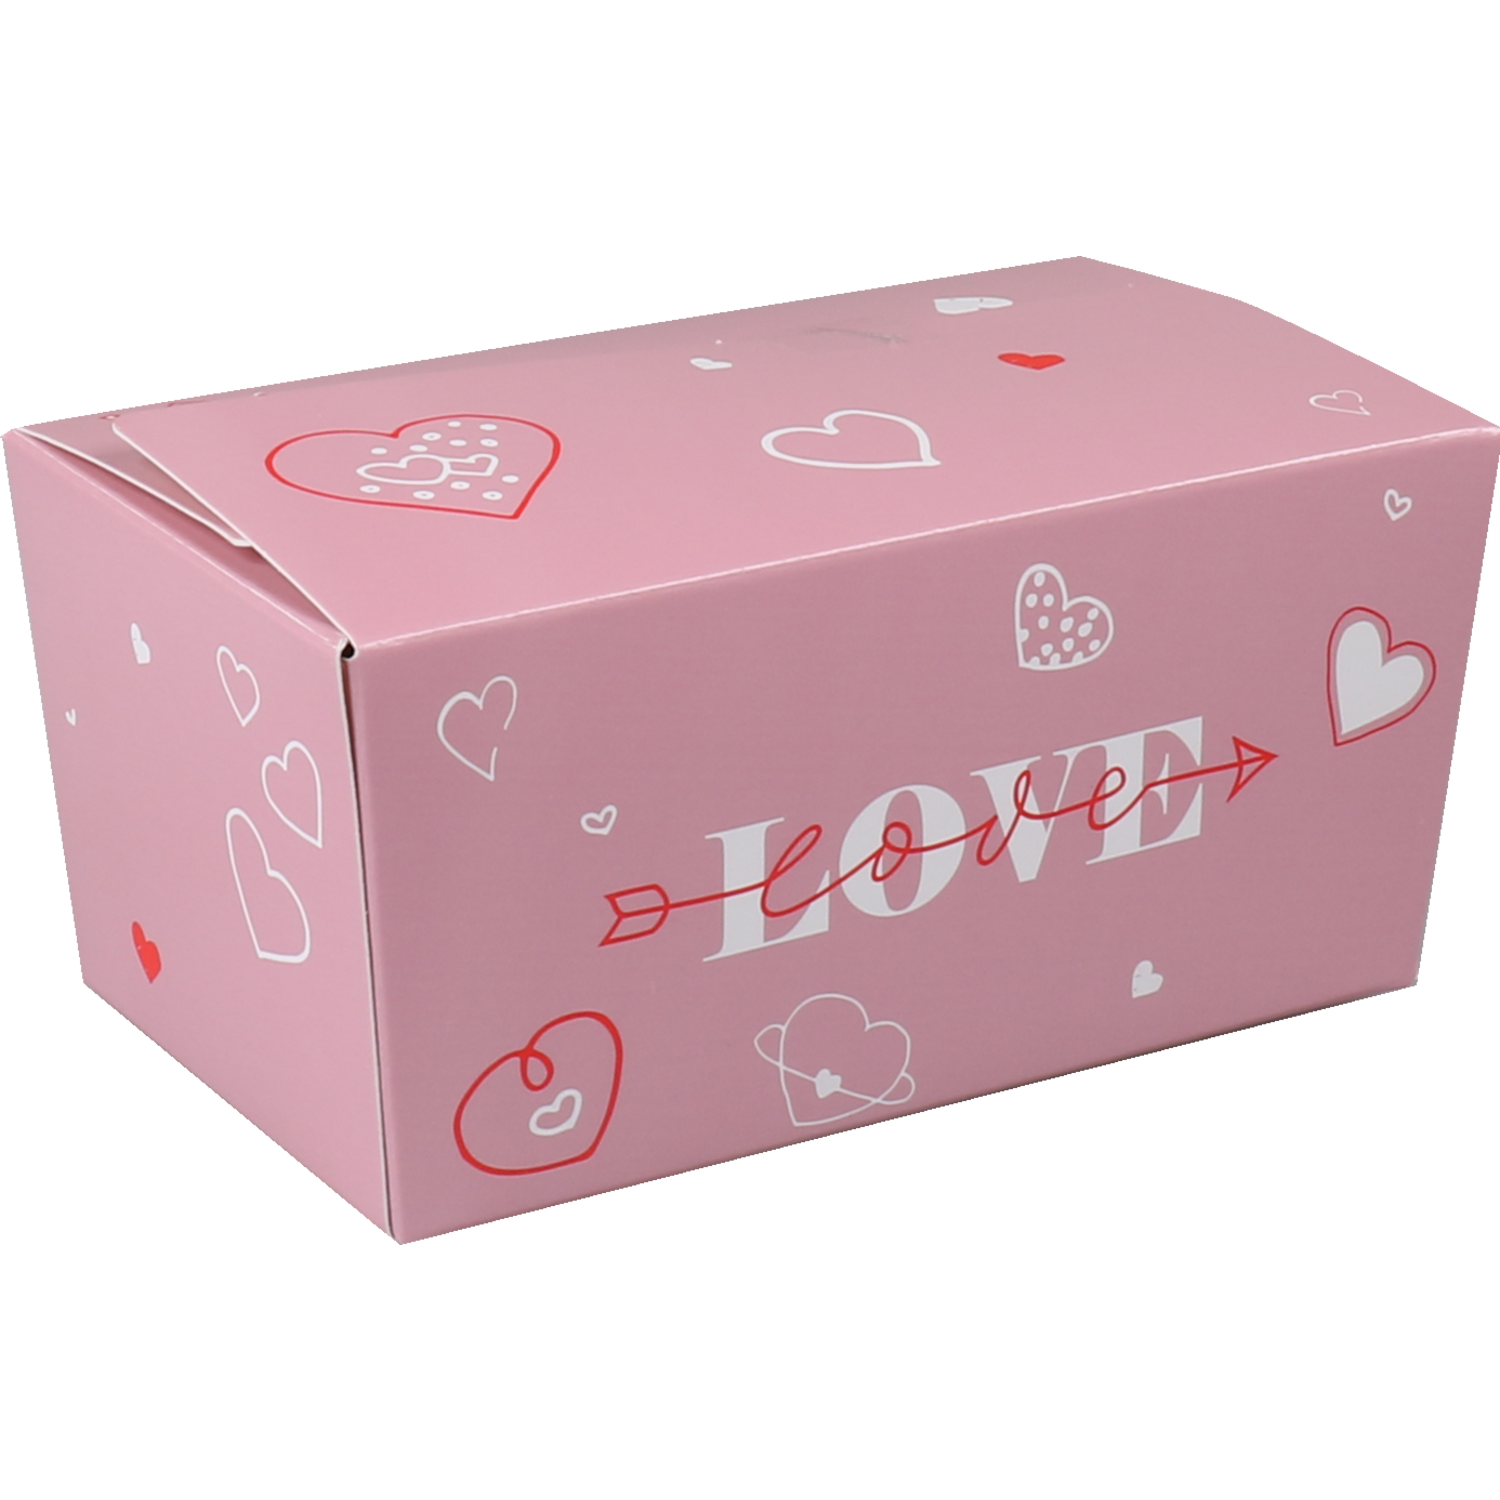 Ballotin, Love and hearts, karton + PP + PET, 375gr, lila 1